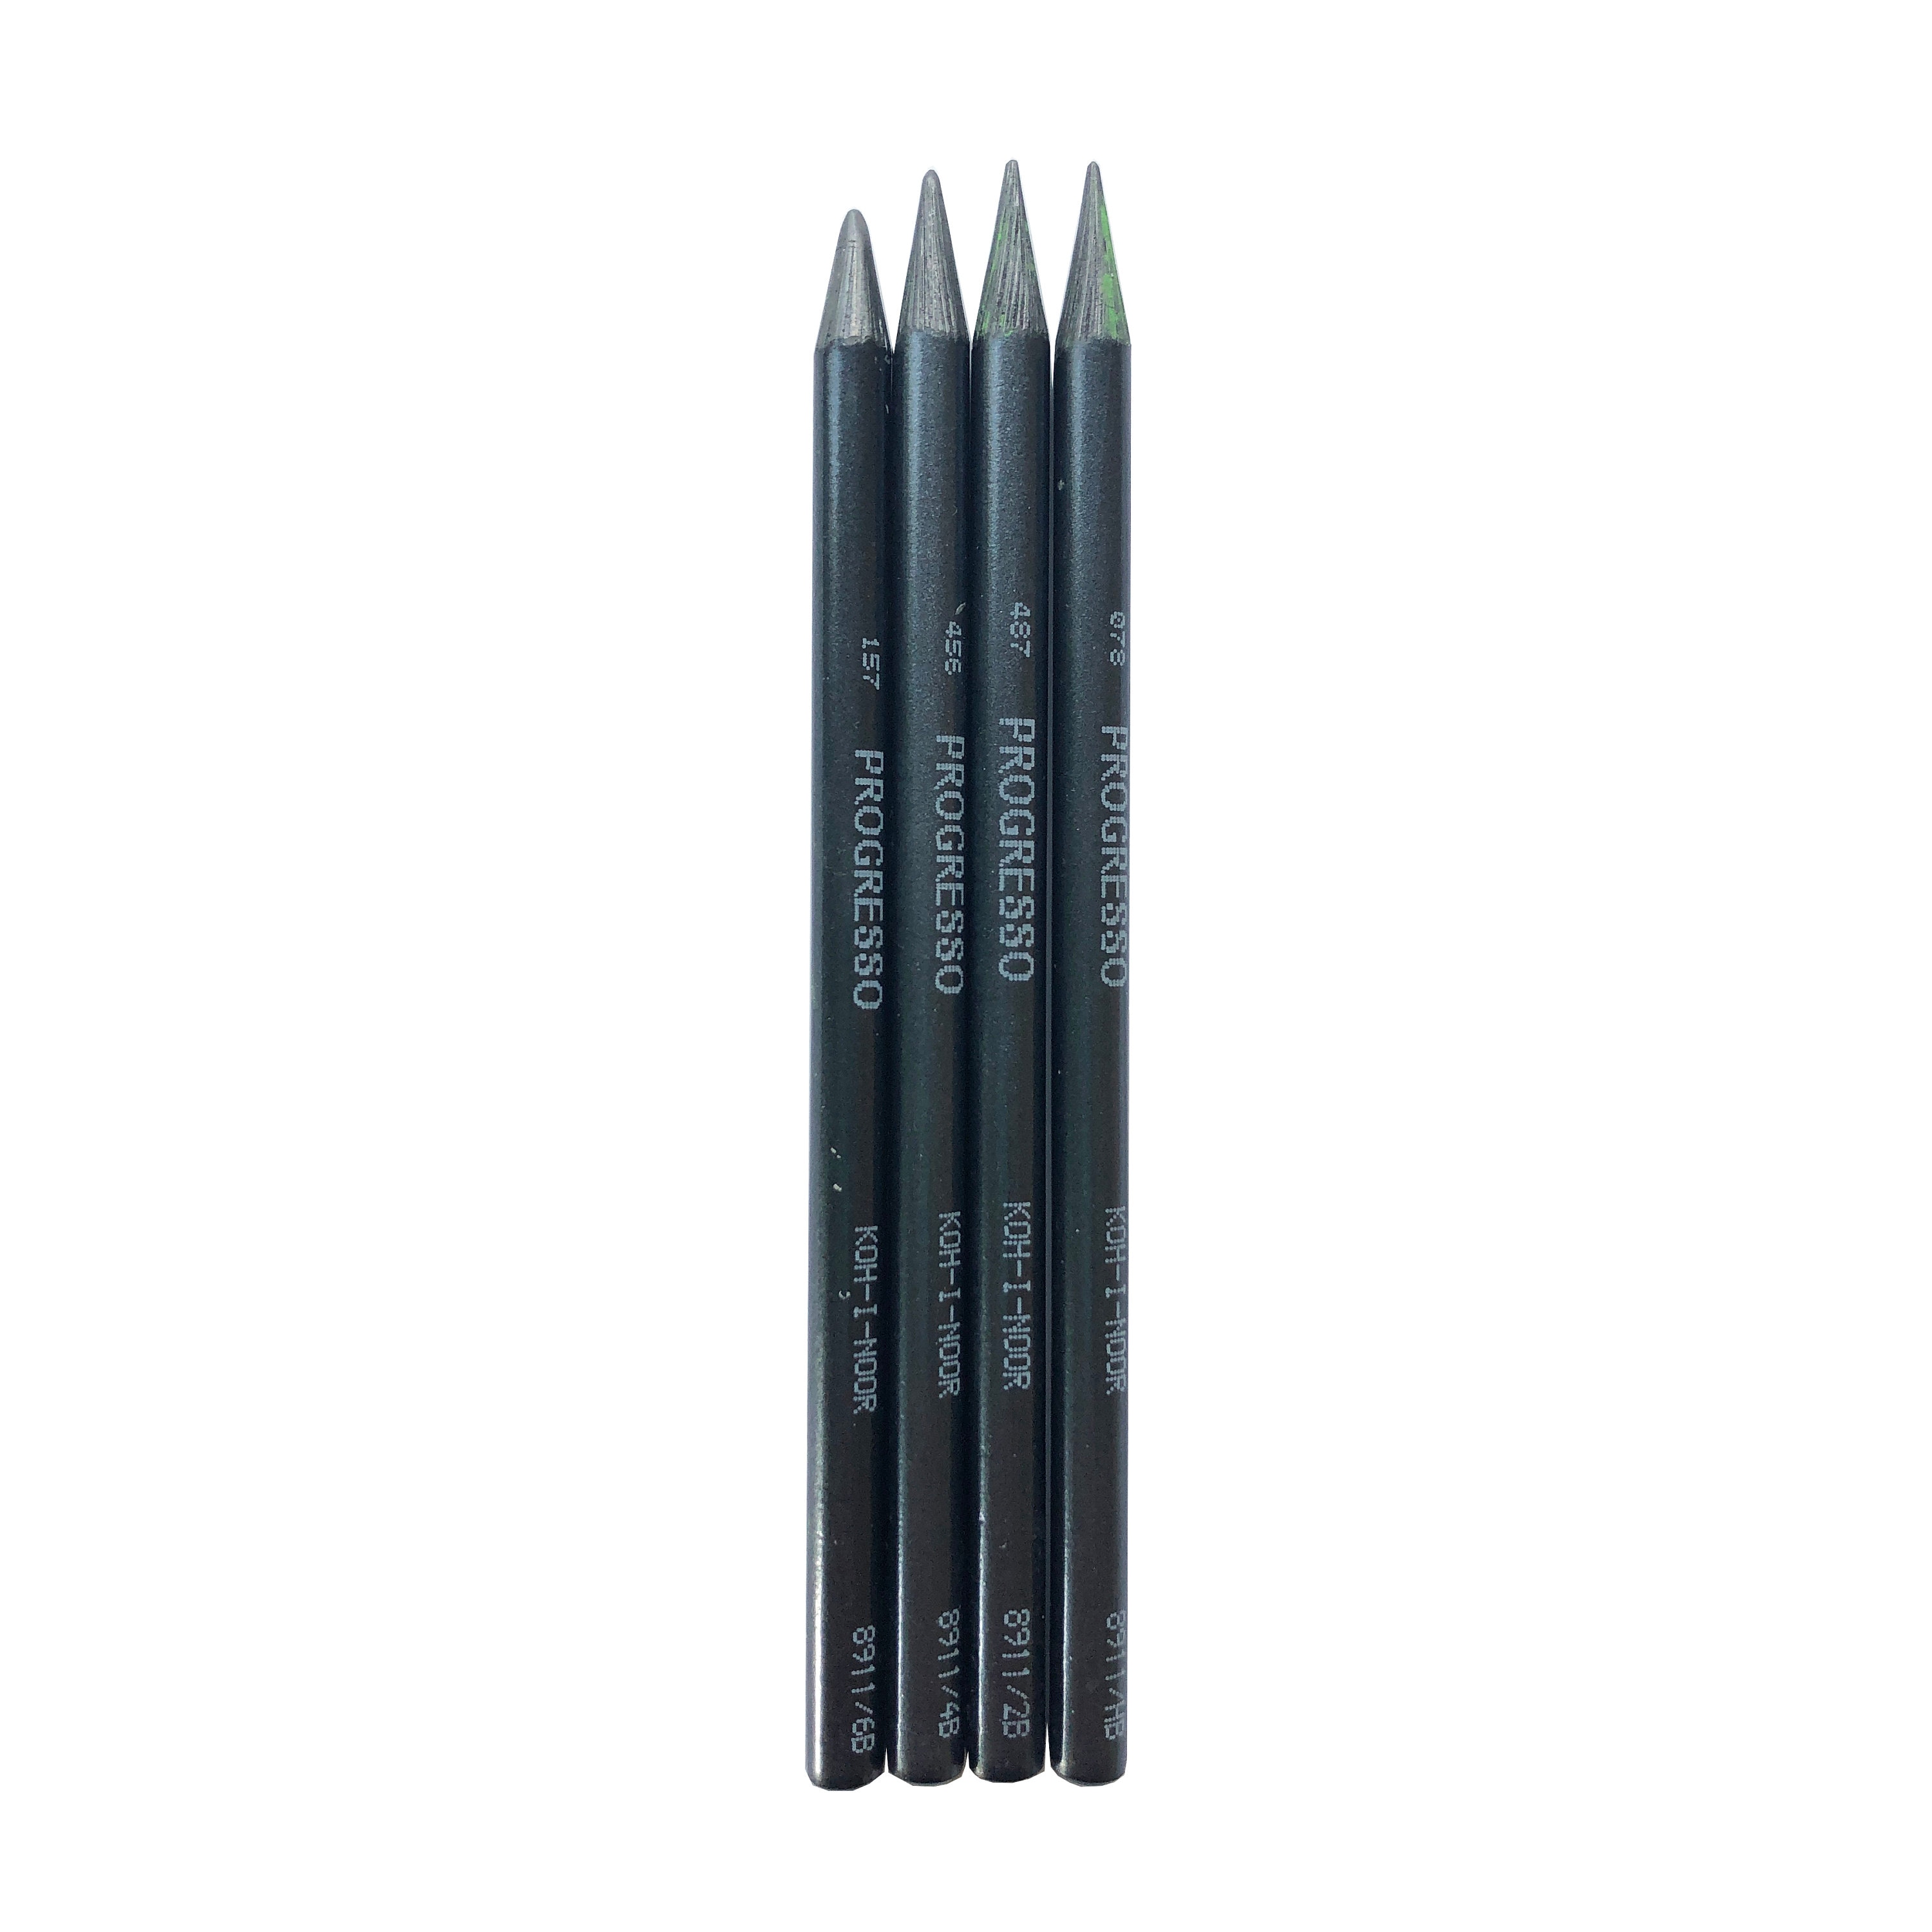 5 x Progresso Woodless Graphite Sticks - HB, 2B, 4B, 6B, 8B pencil grades